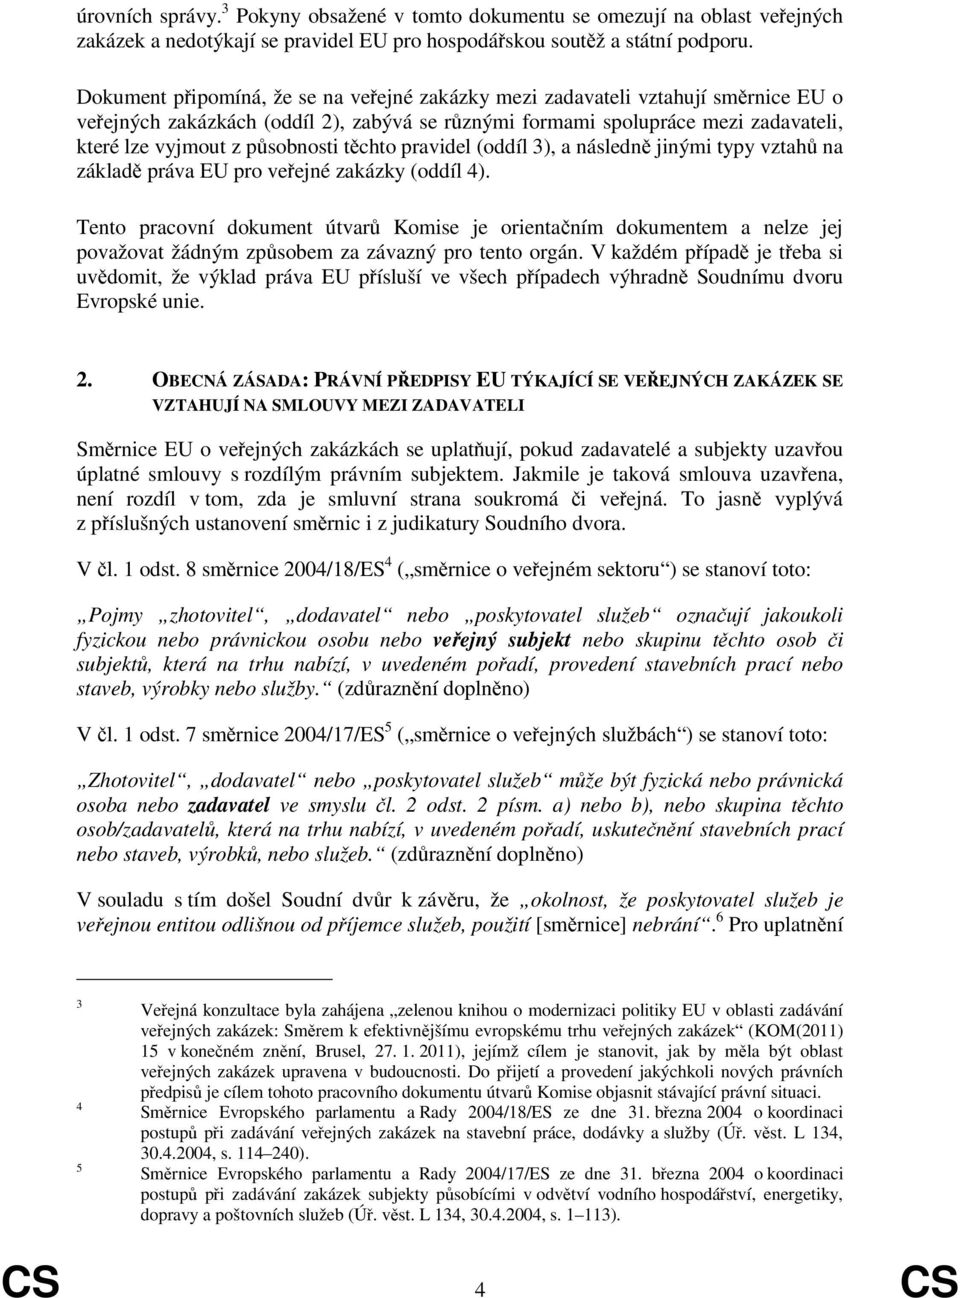 těchto pravidel (oddíl 3), a následně jinými typy vztahů na základě práva EU pro veřejné zakázky (oddíl 4).